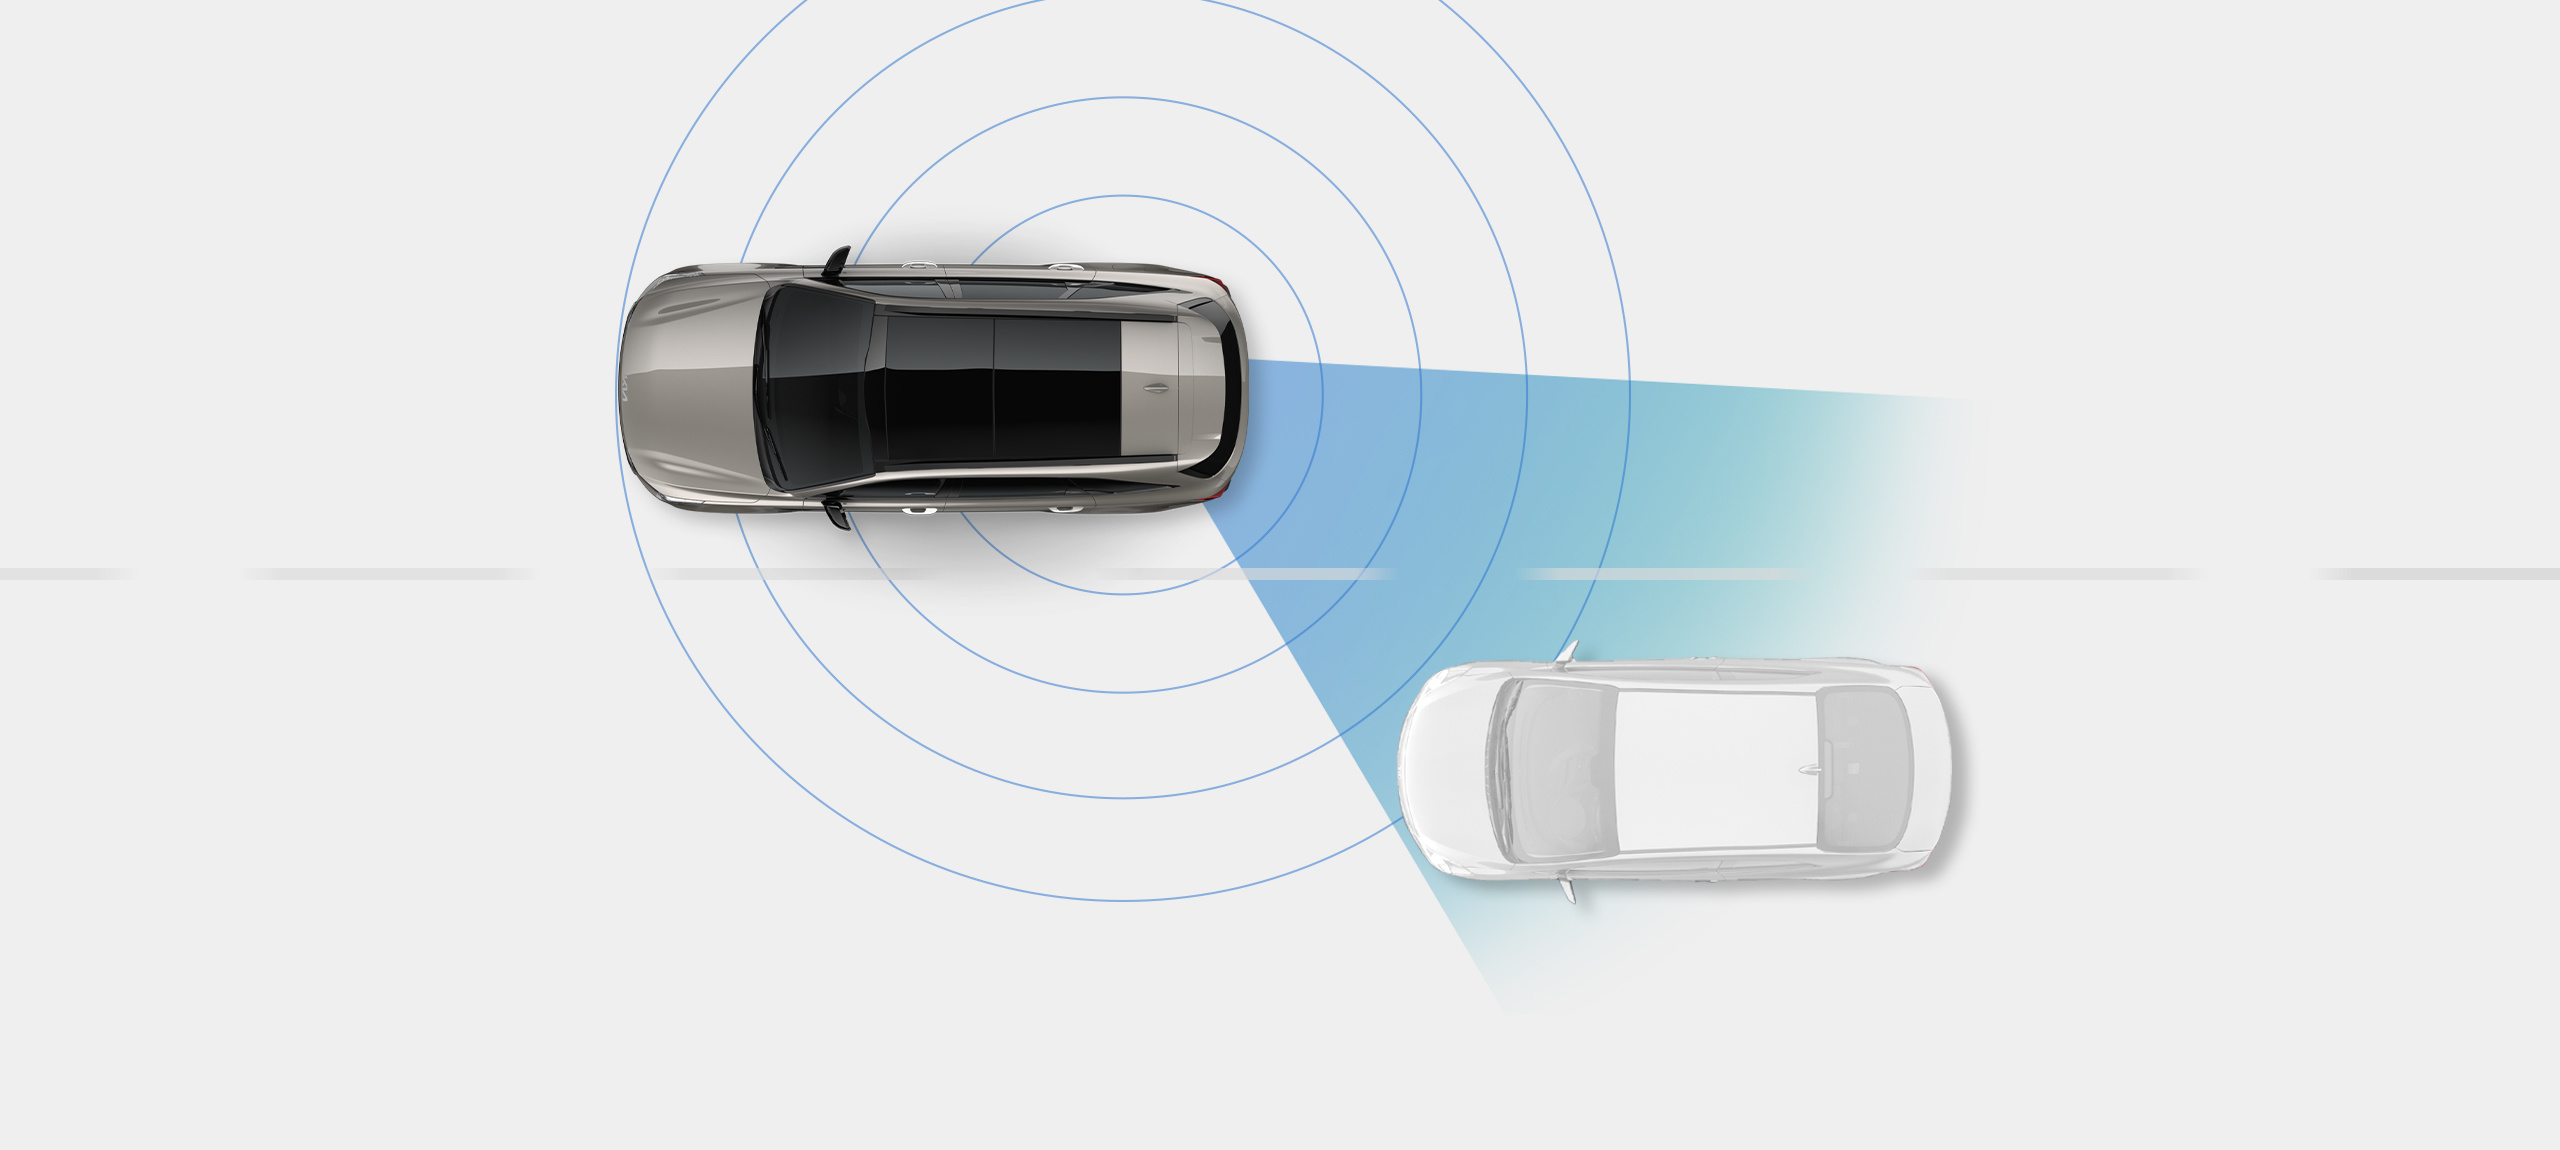 Vehículo Kia en una vista panorámica delante de un automóvil genérico en otro carril, con anillos a su alrededor para mostrar cómo el automóvil detecta los puntos ciegos